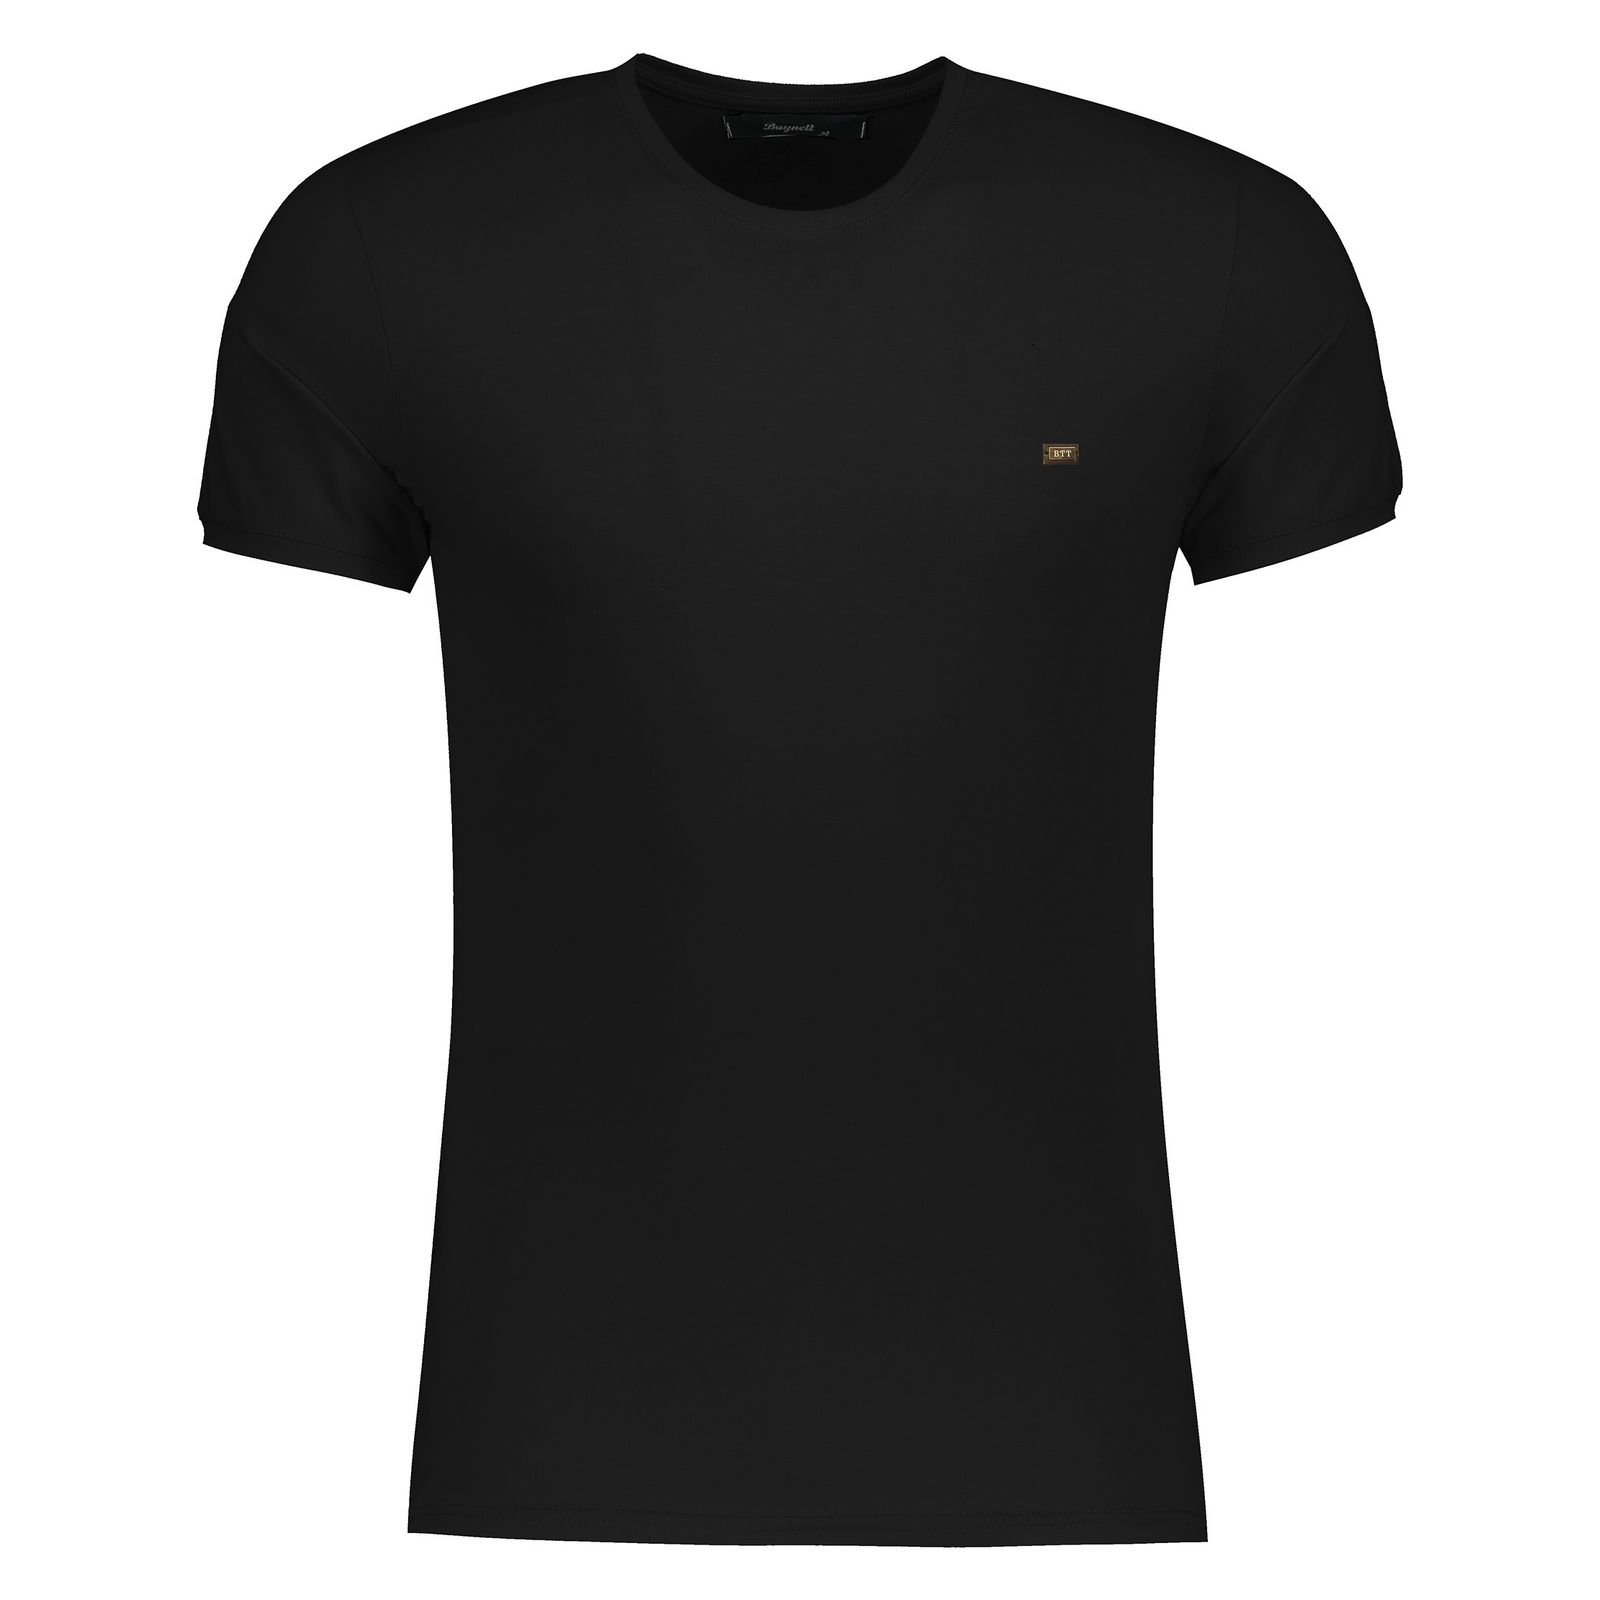 تی شرت آستین کوتاه مردانه باینت کد 1-334 btt -  - 1